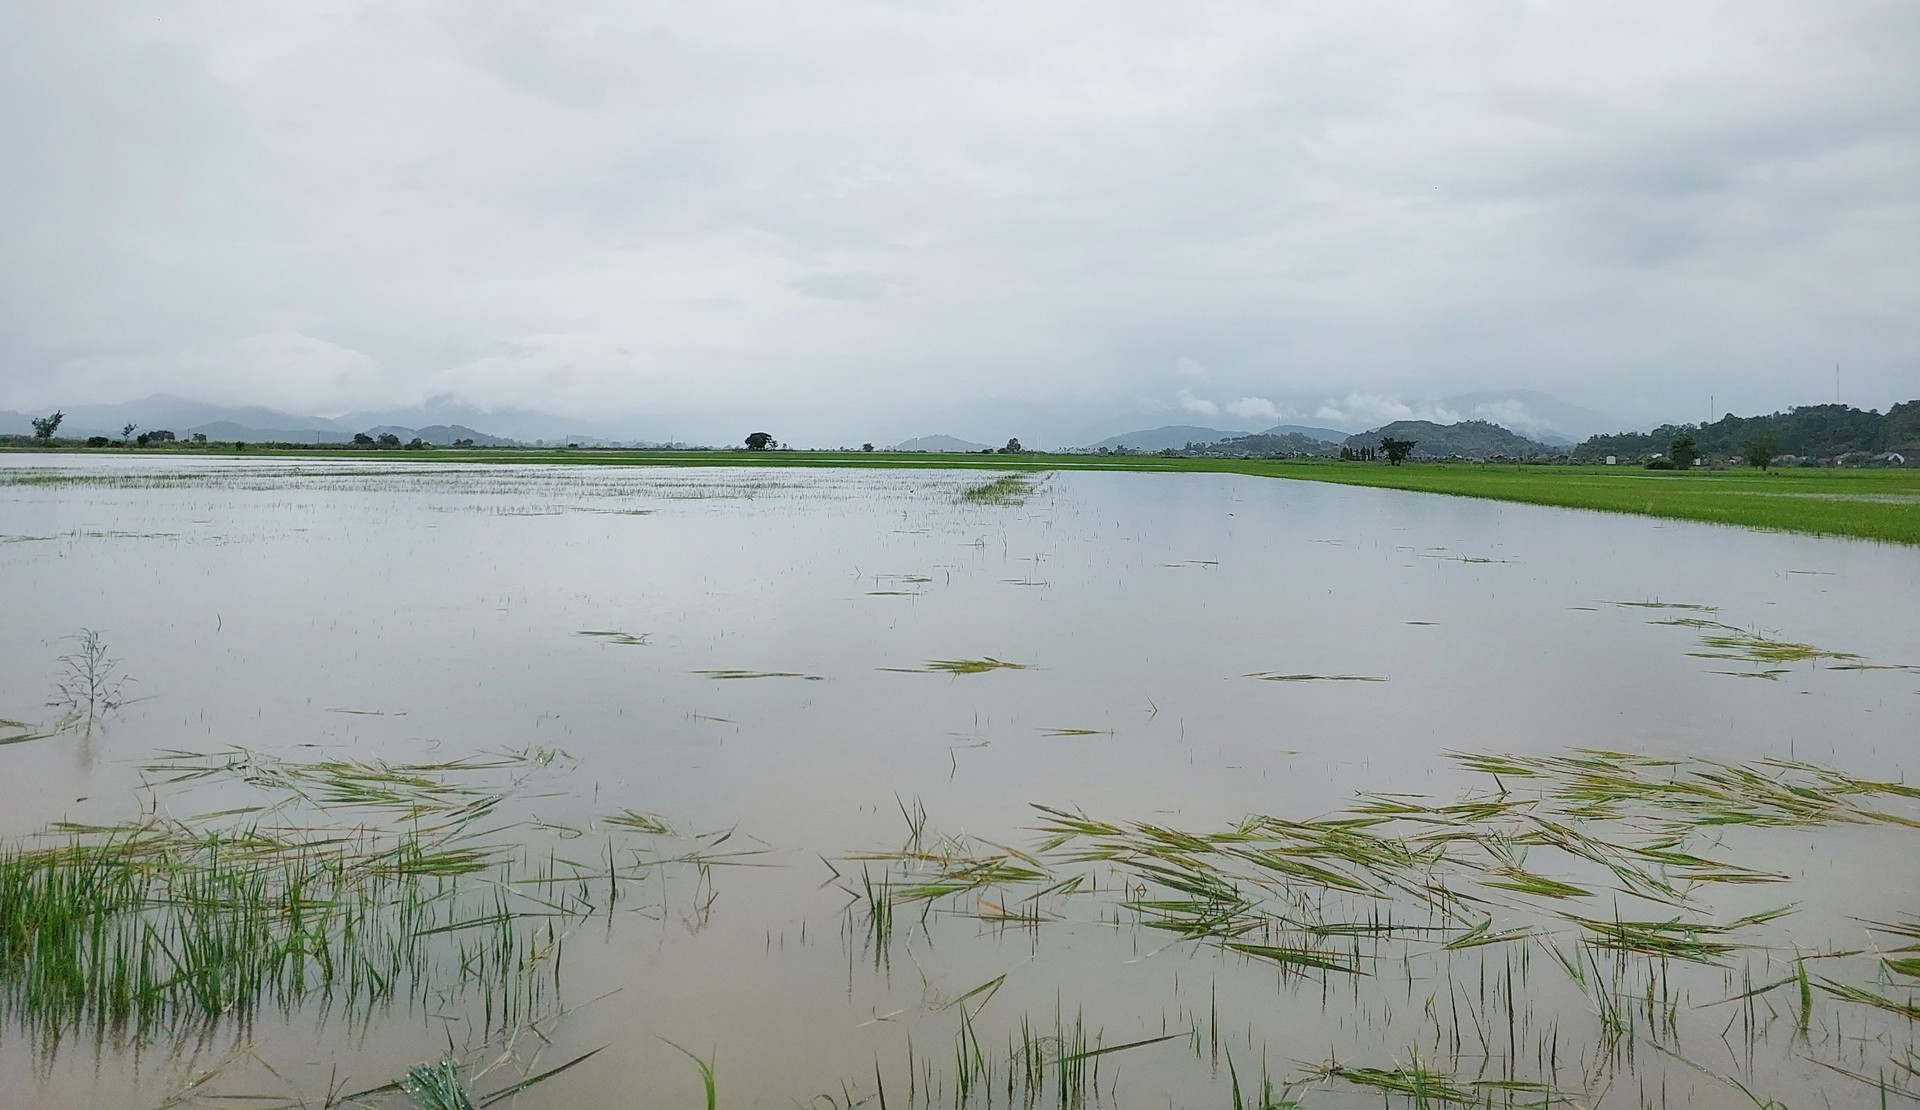 Hơn 2.200ha lúa của người dân Đắk Lắk bị ngập do mưa lớn kéo dài những ngày qua. Ảnh: Quang Yên.